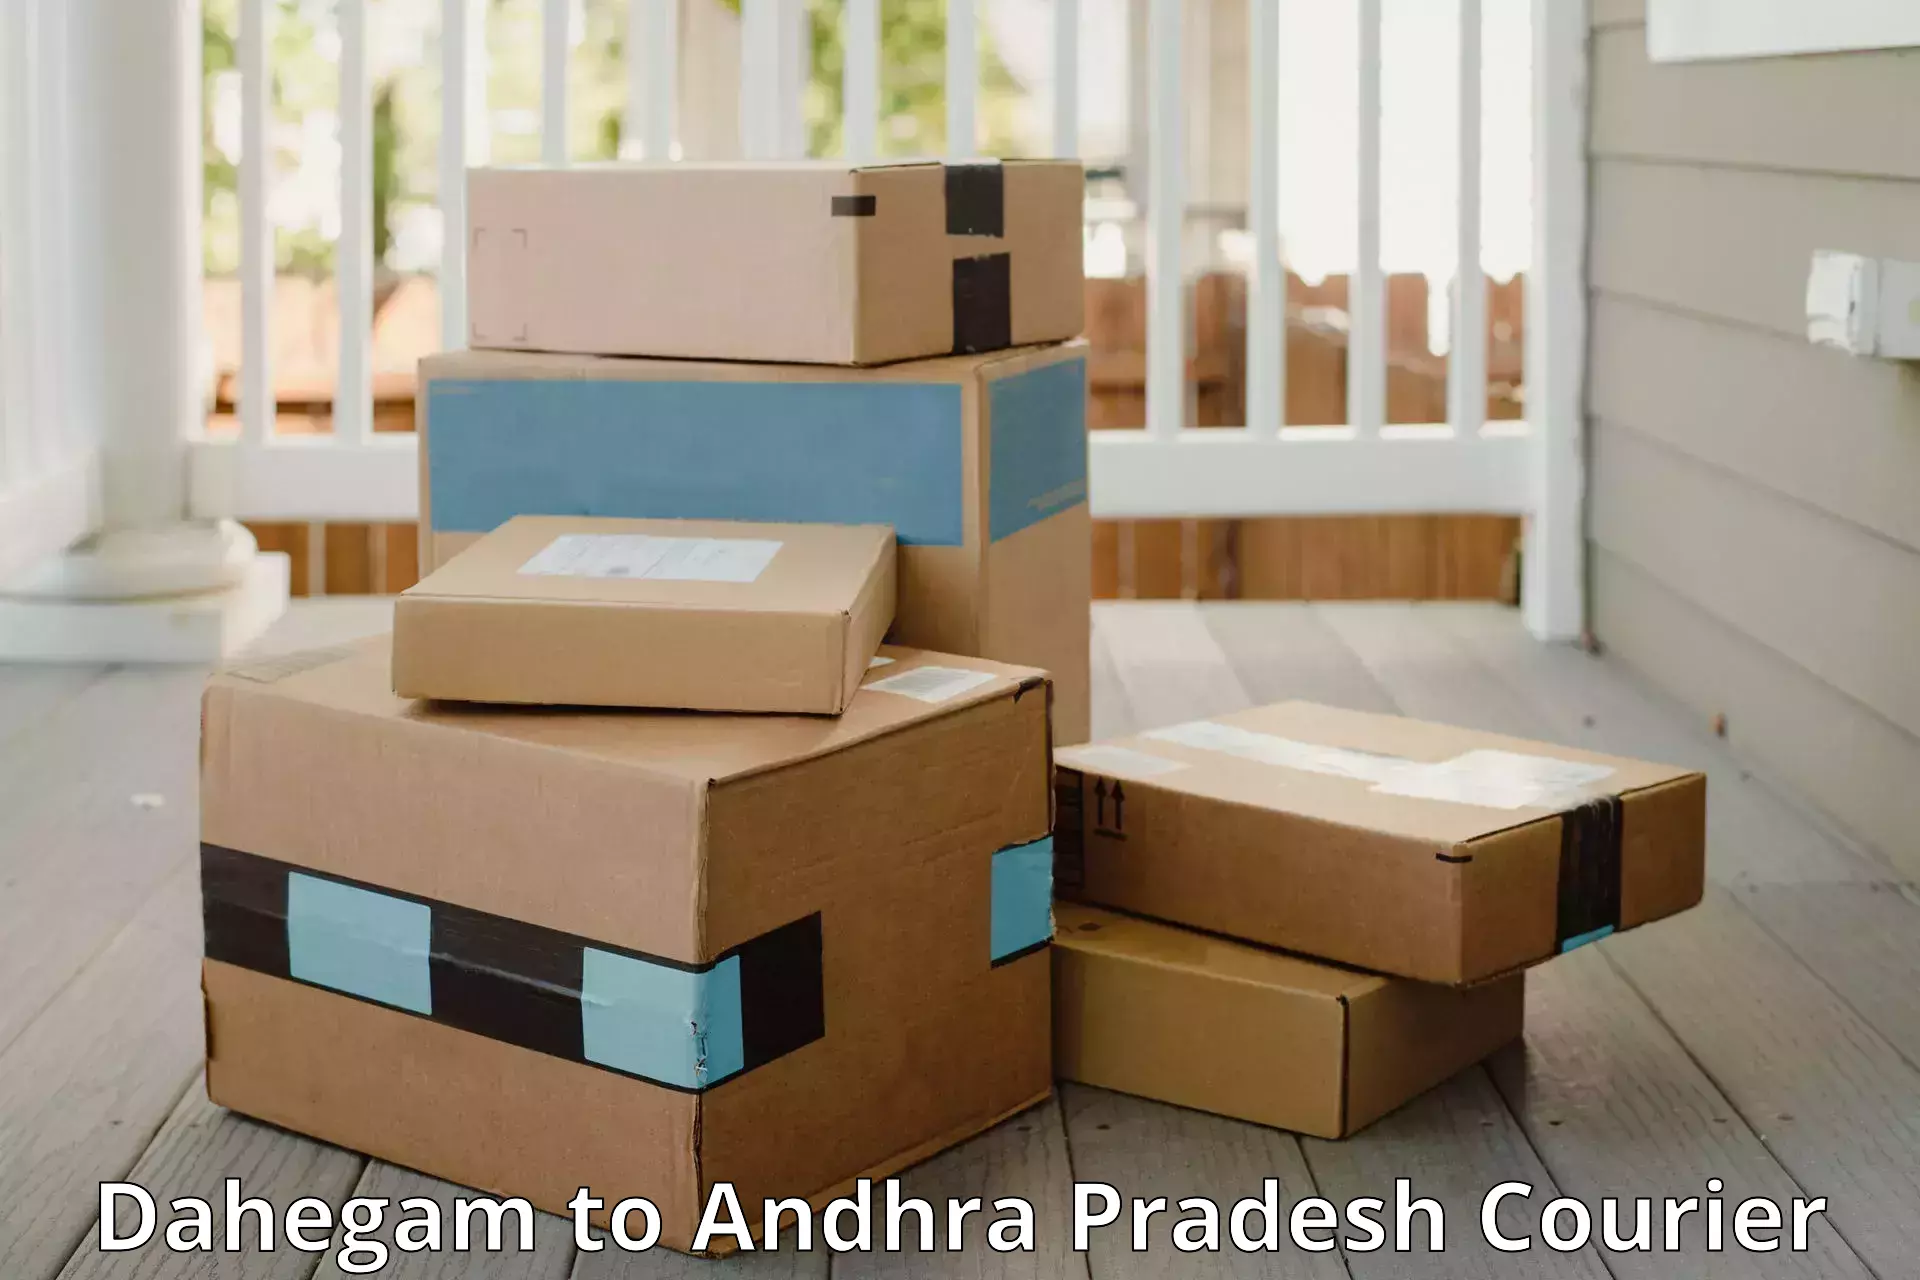 Luggage delivery network Dahegam to Andhra Pradesh